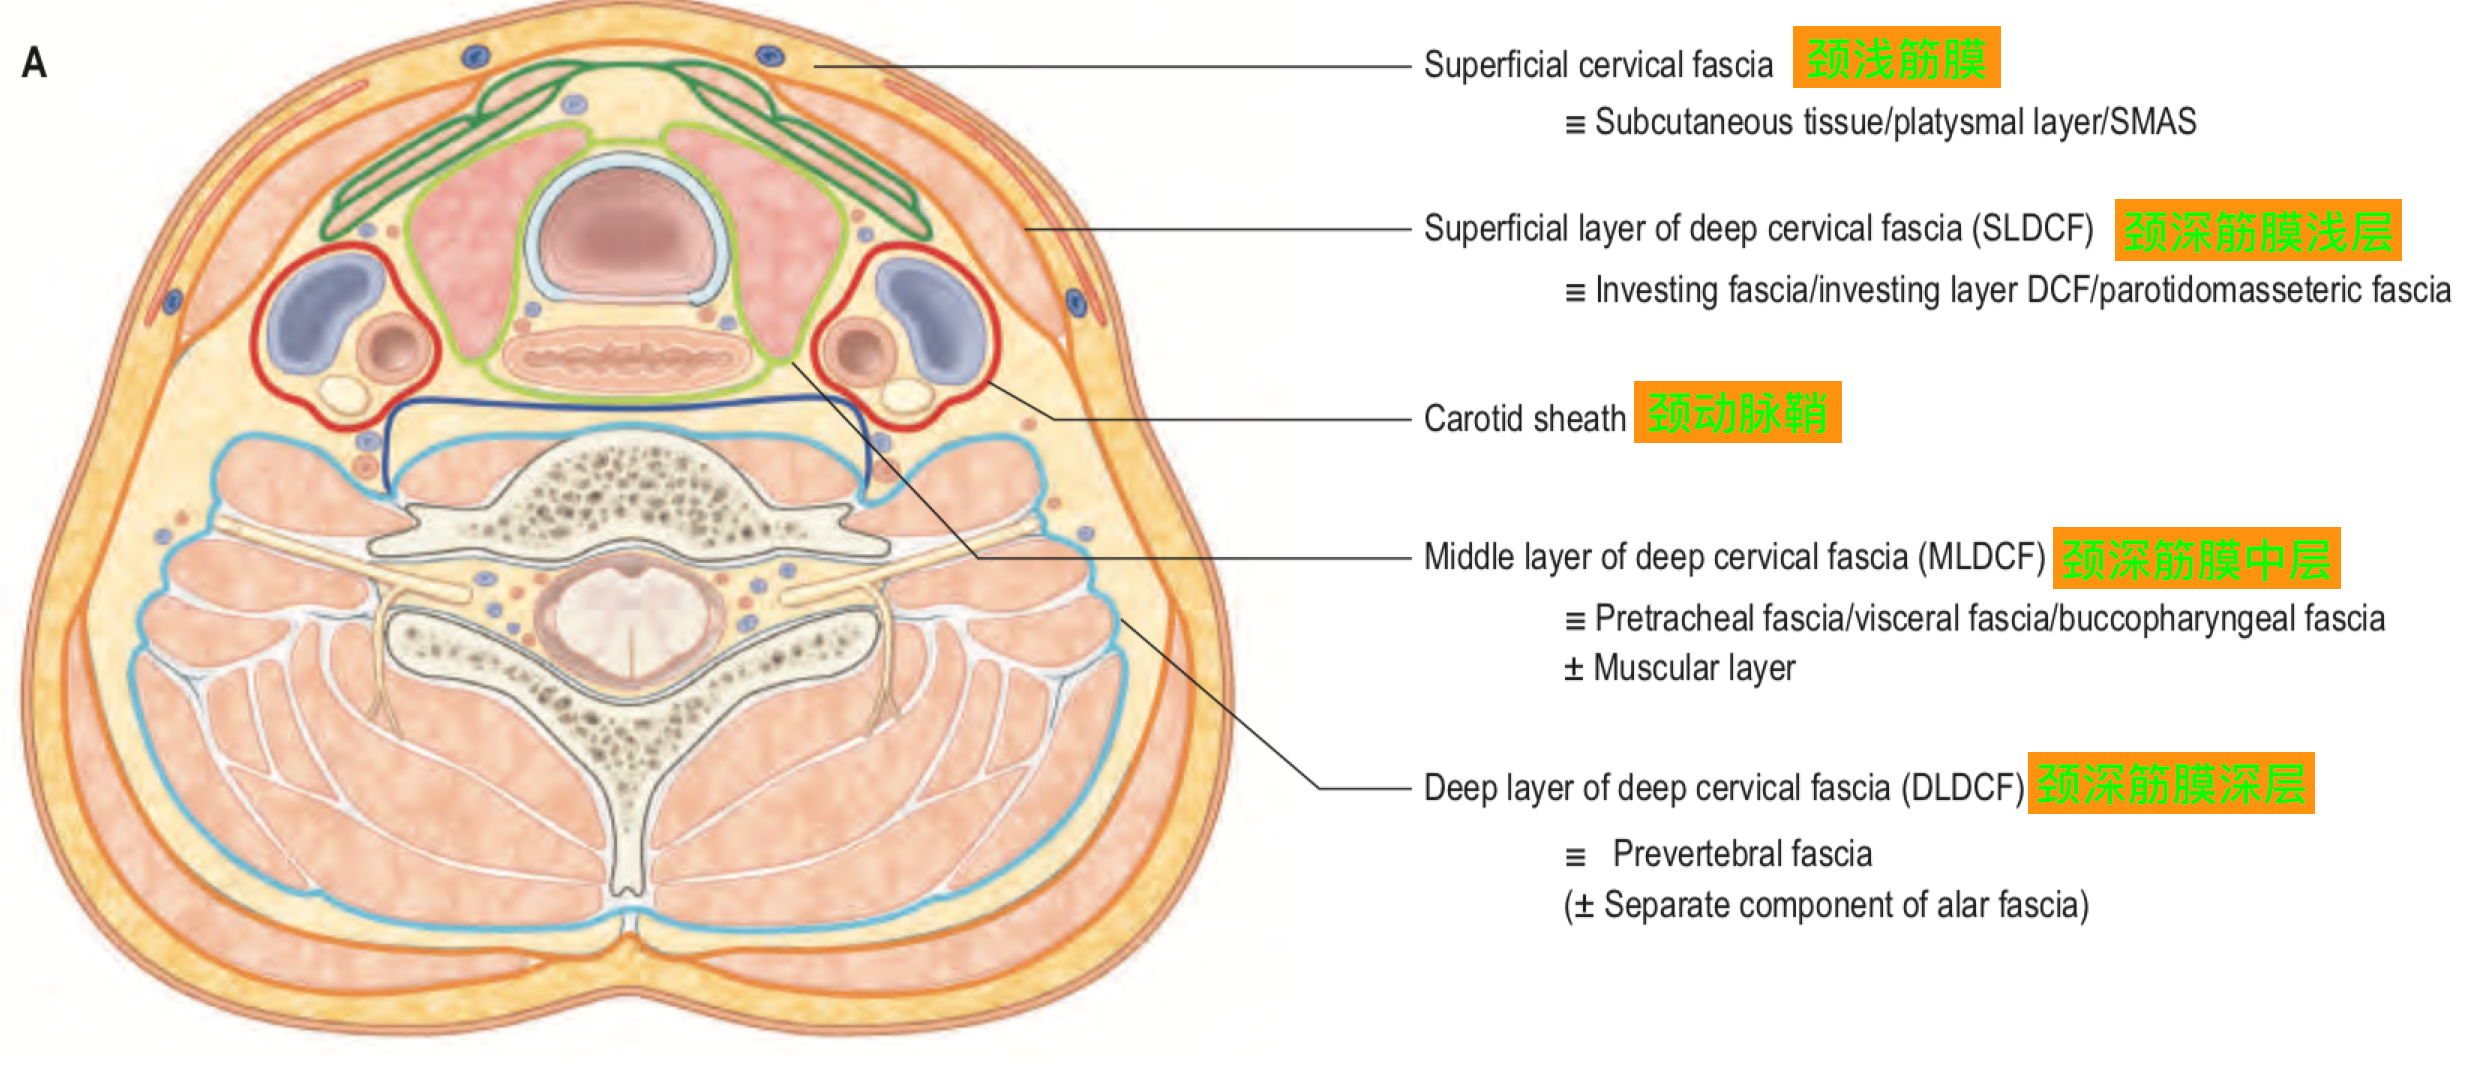 2,颈深筋膜中层颈深筋膜中层常被分为一个包绕着舌骨下肌群的肌层和一